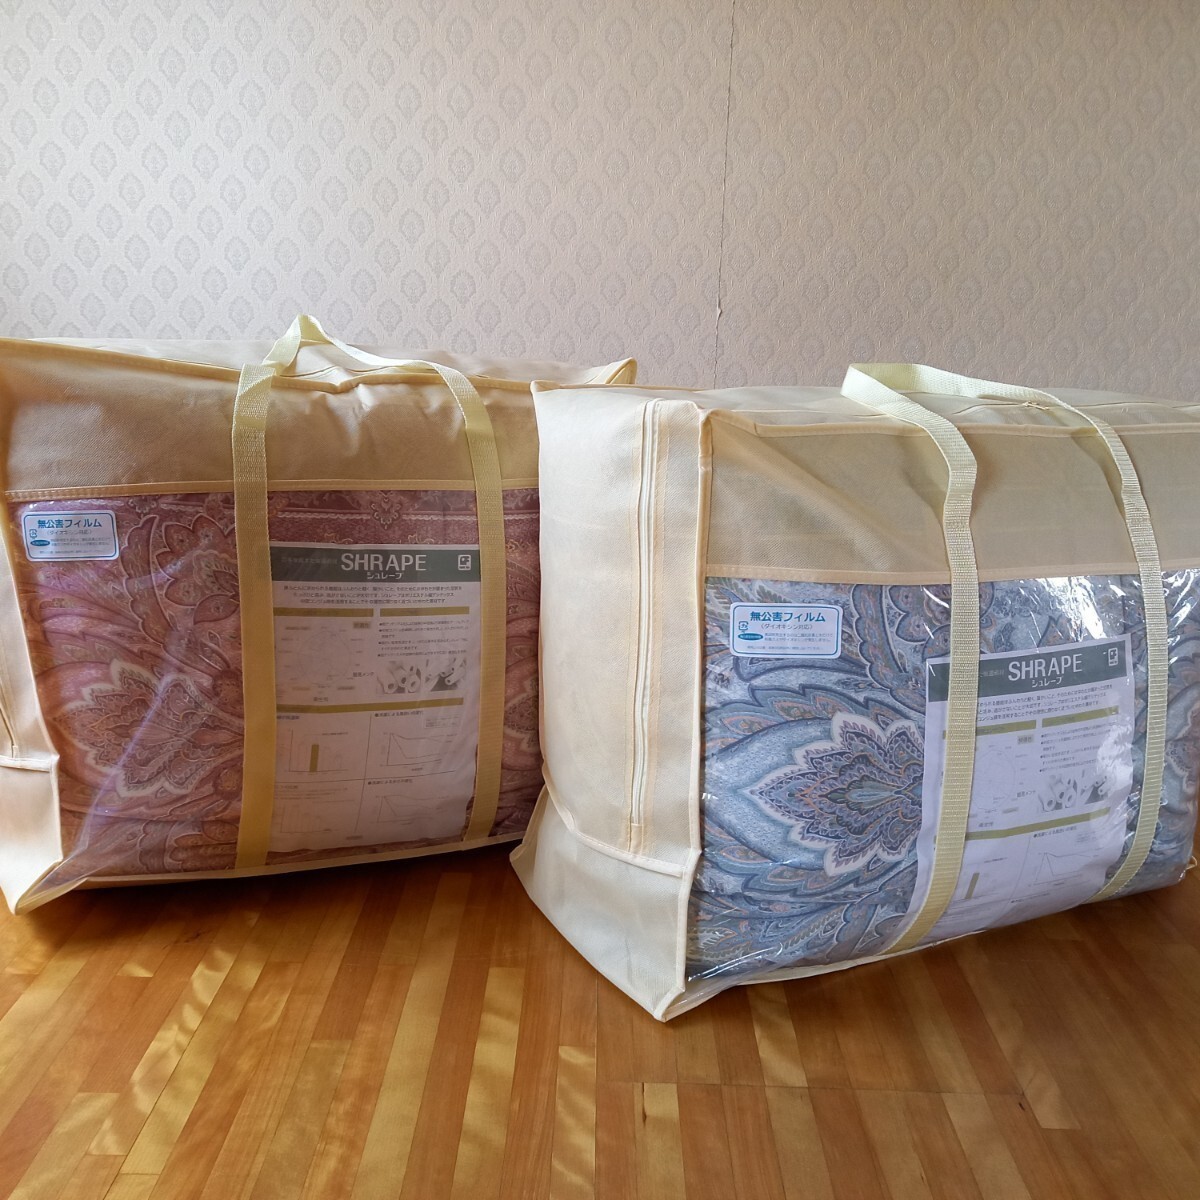 即決 送料無料 2枚セット シングル ホテル仕様 増量タイプ 羽毛布団を越えた素材 掛け布団 清潔 安心 日本製 同柄 敷き布団 出品中です。